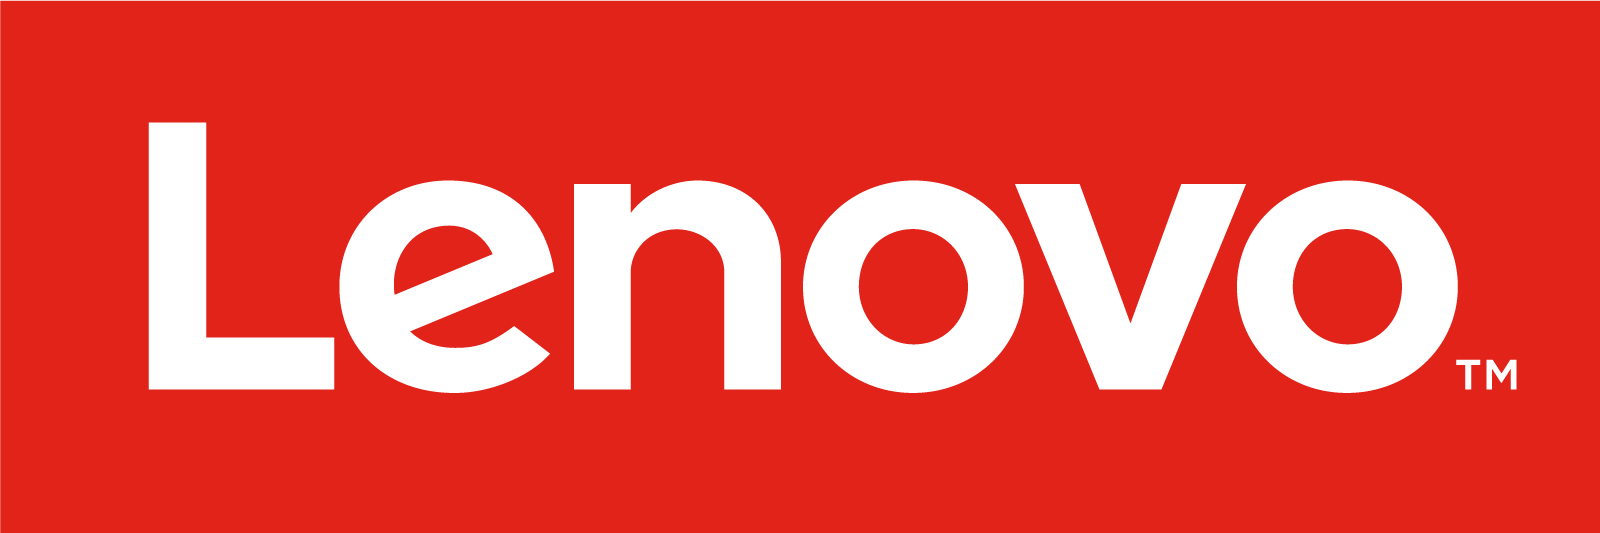 Branding_lenovo-logo_lenovologoposred_low_res